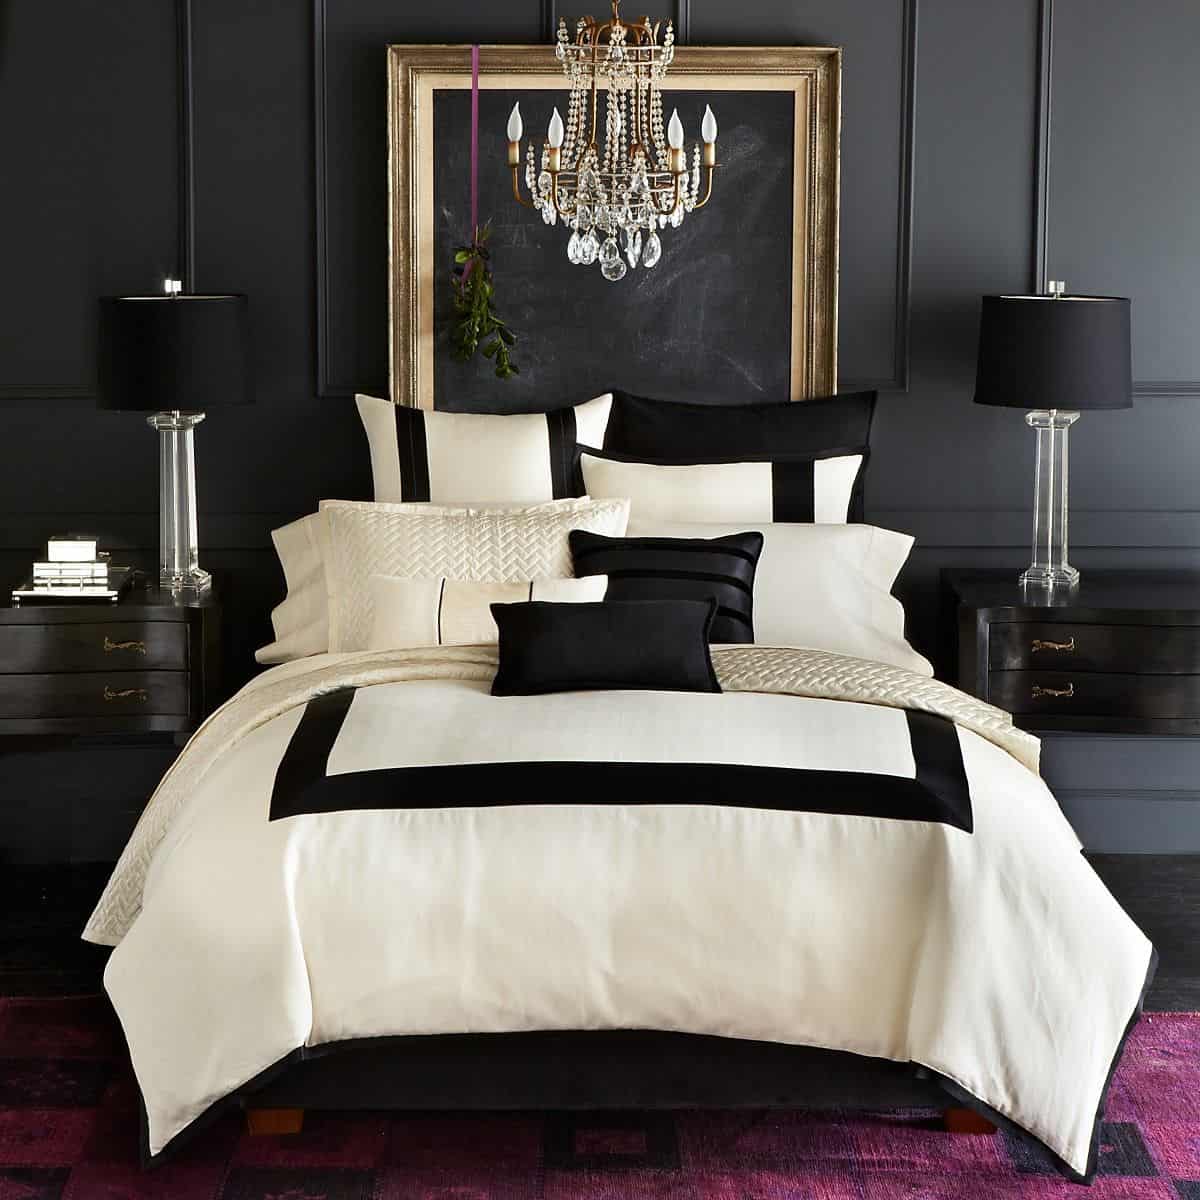 black luxury walls in bedroom